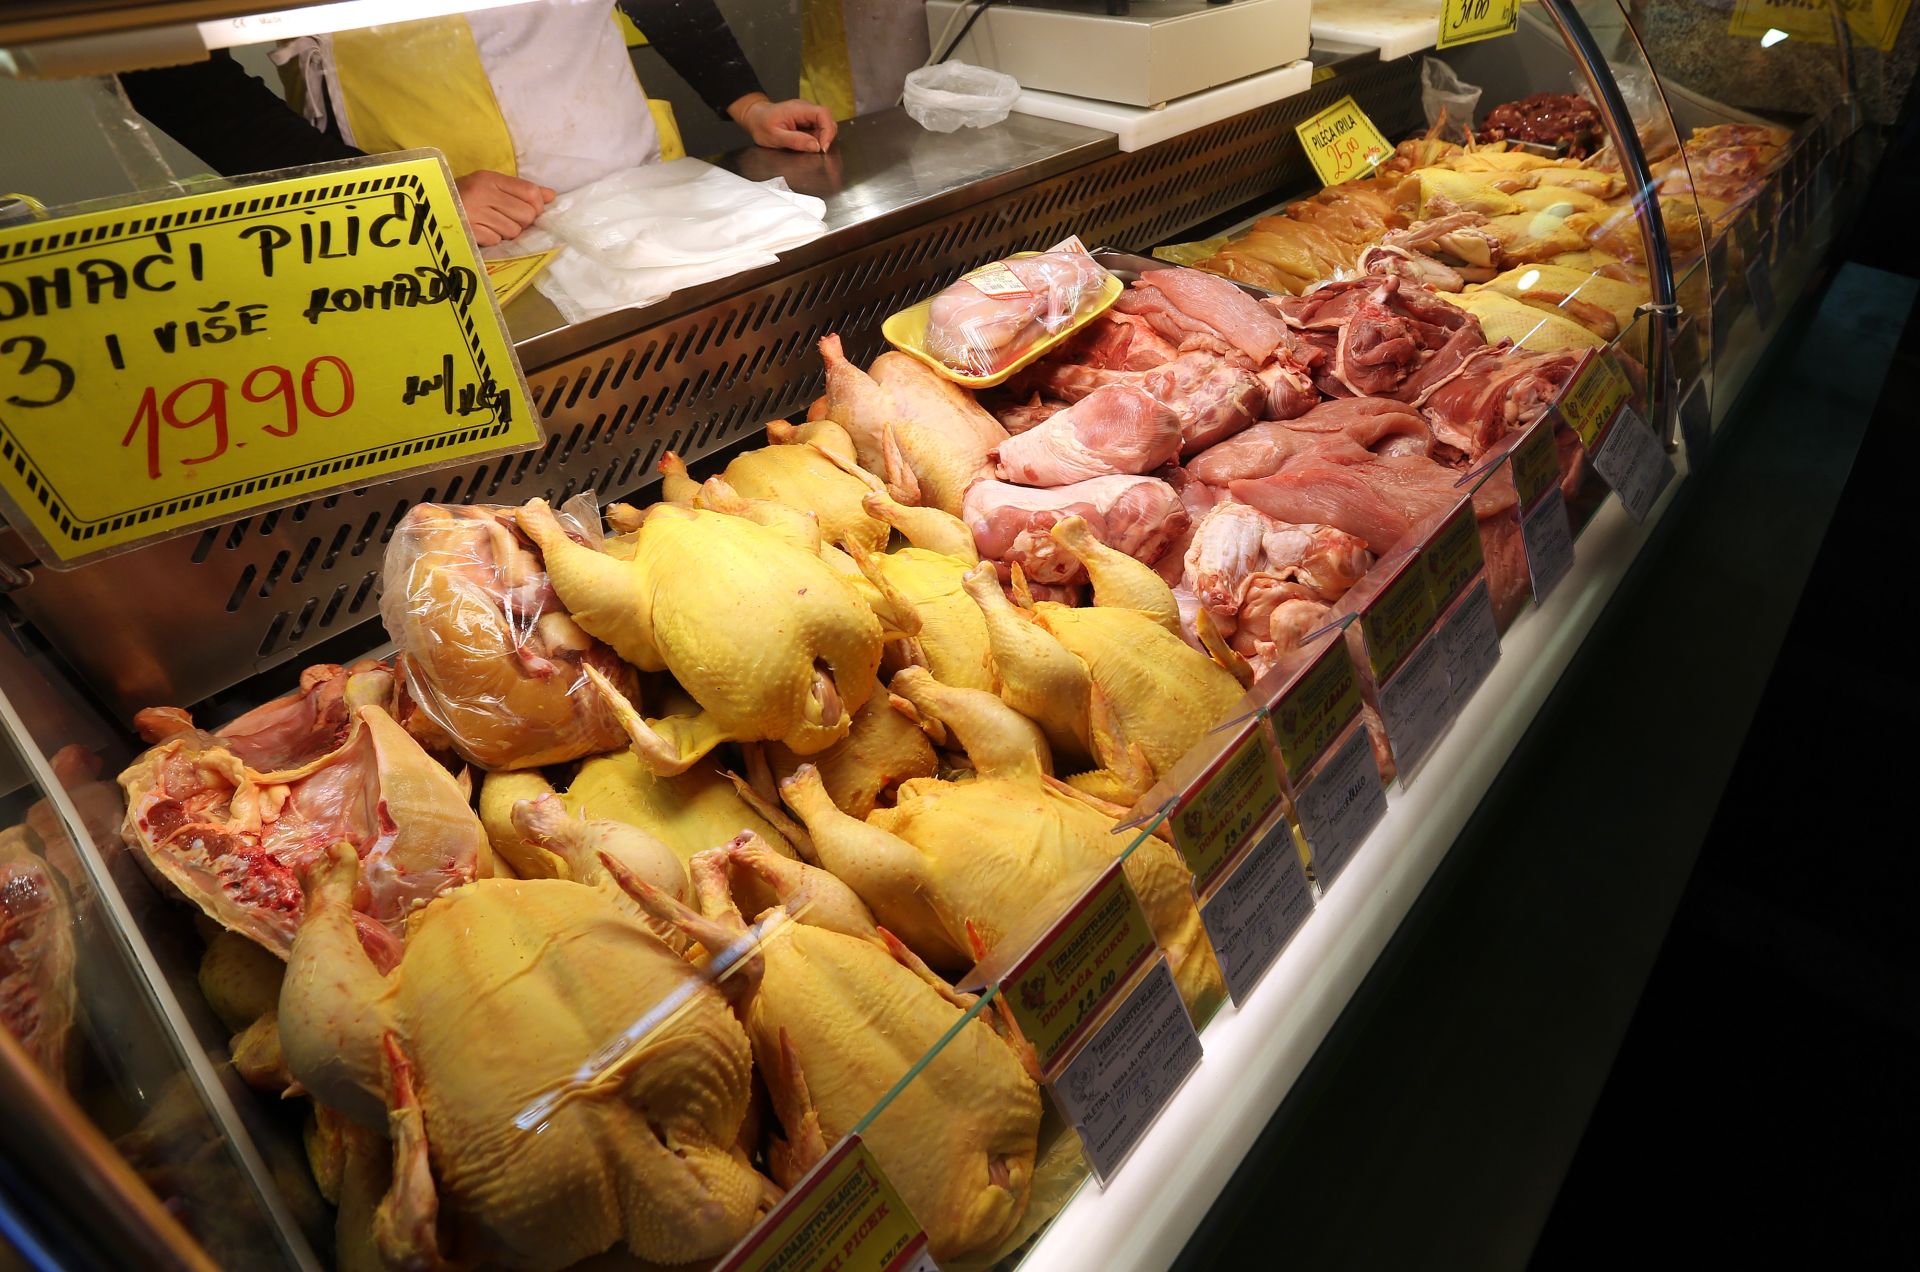 SLUČAJ SALMONELA: Iz prodaje povučeno svježe pileće meso iz mesnice u Zagrebu